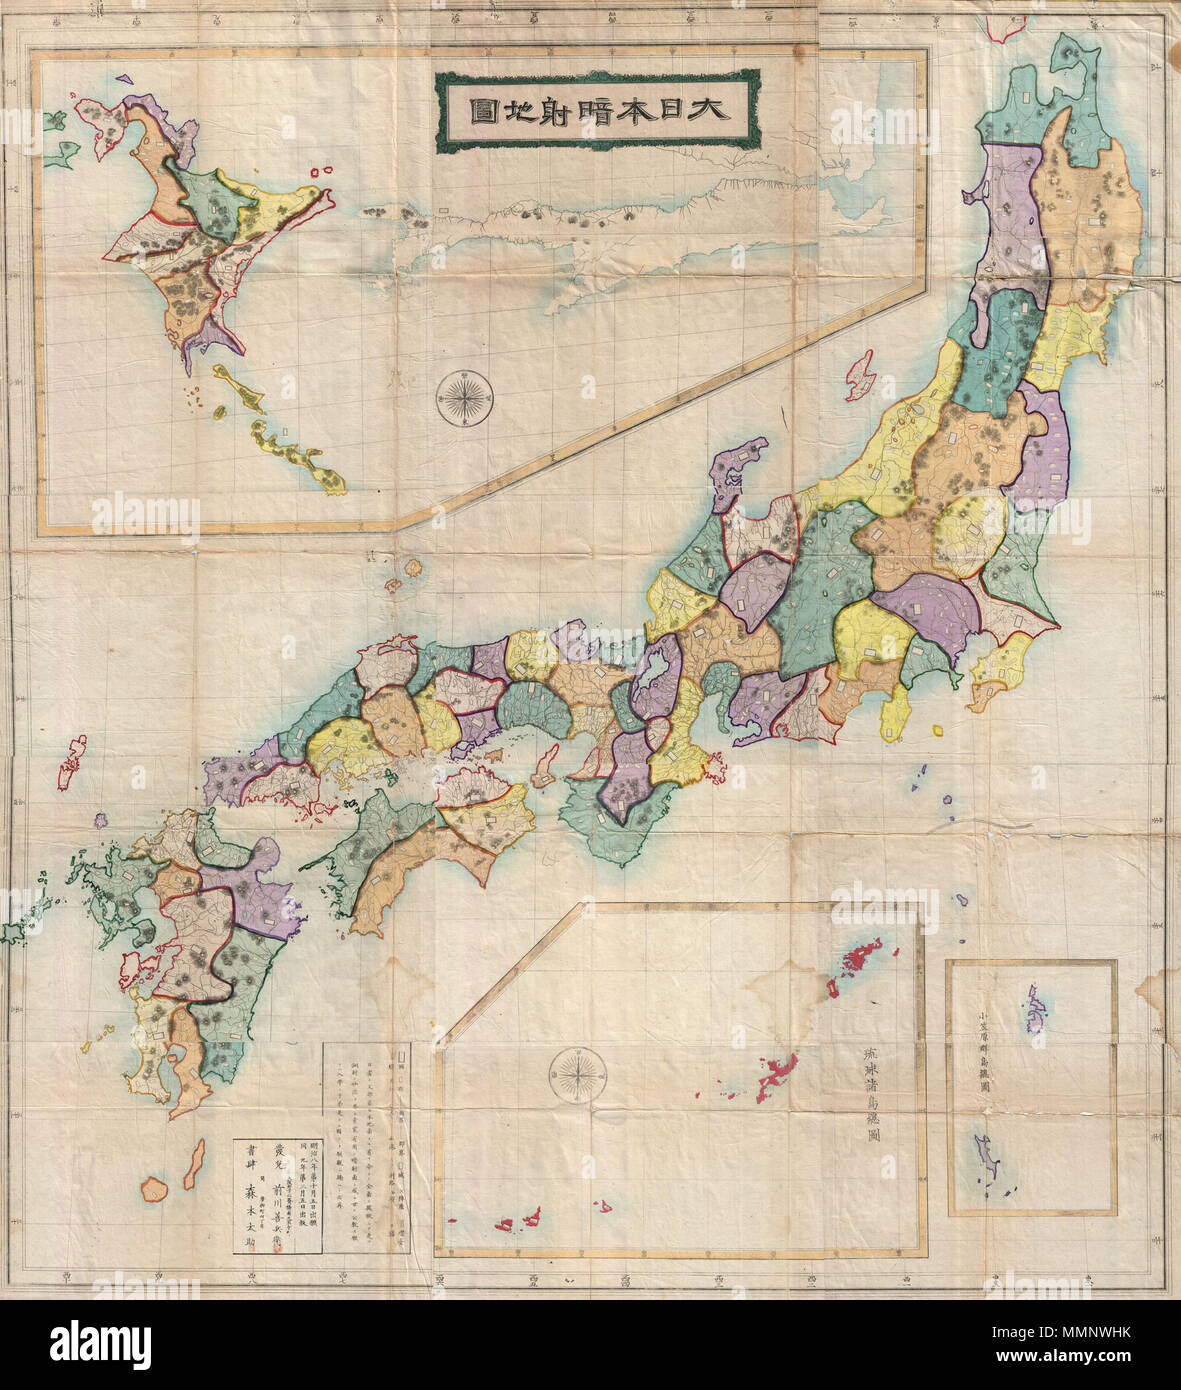 . Inglese: si tratta di una monumentale mappa giapponese del Giappone preparato nel 1875 o Meiji 8. Copre la totalità del Giappone inclusiva di Hokkaido e le isole Ryukyu. Cartographically questa mappa, come la maggior parte del xviii secolo mappe di Giappone, harkens all'INO Tadataka sondaggi del XVIII secolo, anche se questo esempio non presentano notevoli revisione. Anche così, l'influenza di Meiji Ishin o Restaurazione Meiji è evidente nella forma della prefettura di struttura adottata nel 1871. Stilisticamente questa mappa si discosta sensibilmente dal periodo Edo cartografia preparata sotto il Shogunato Tokugawa e, se rilasciato e Foto Stock